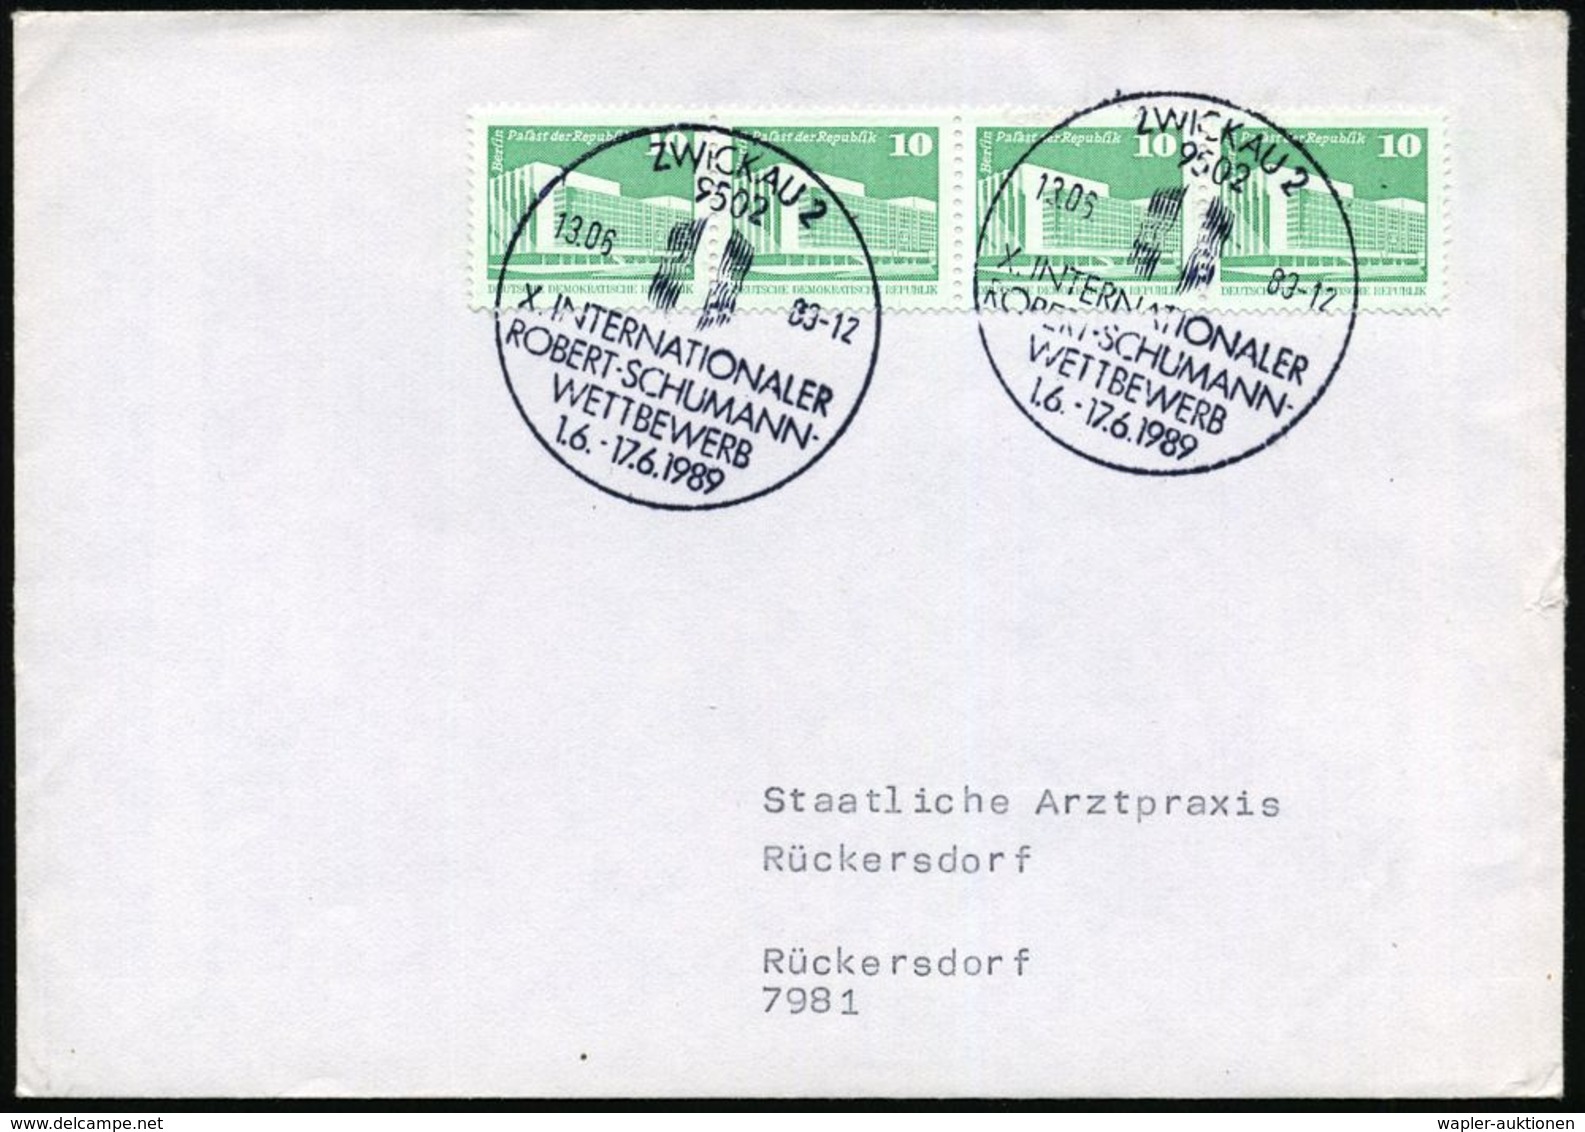 ROBERT SCHUMANN : 9502 ZWICKAU 2/ X.INTERNAT./ ROBERT-SCHUMANN-/ WETTBEWERB 1989 (13.6.) SSt (Logo) 2x Klar Auf Inl.-Bf. - Music